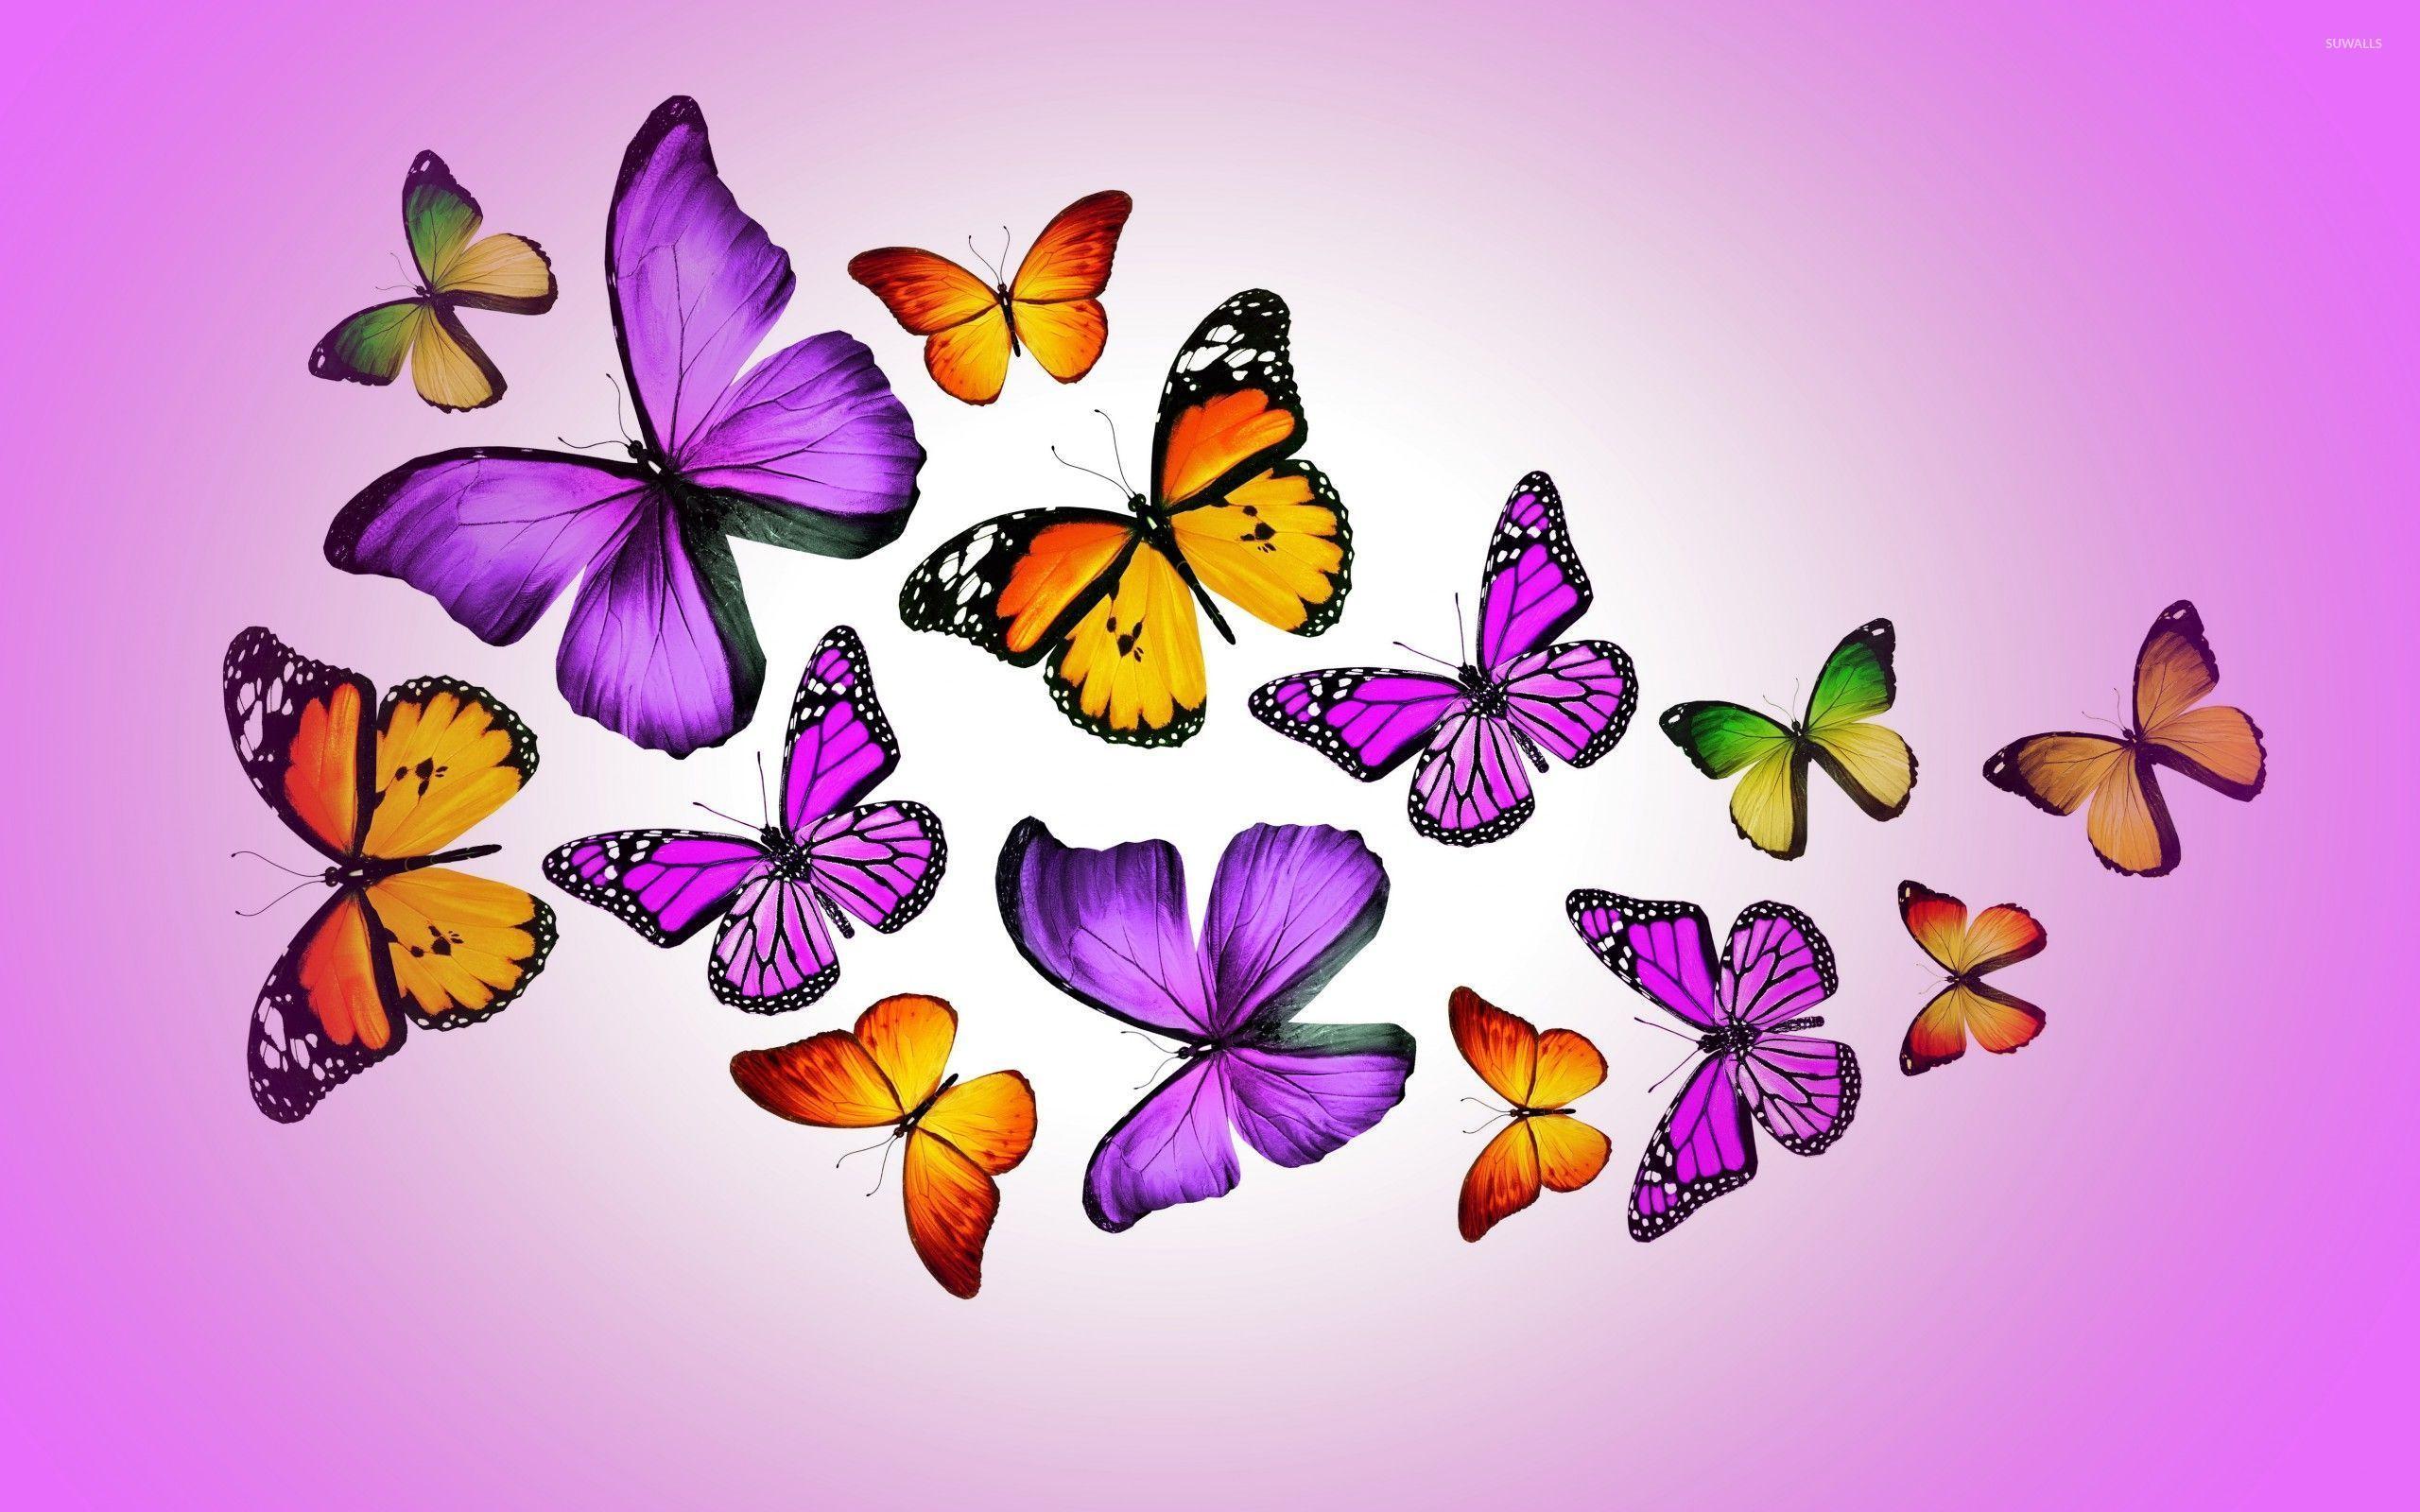 Purple Butterfly Wallpapers - Top Free Purple Butterfly ...